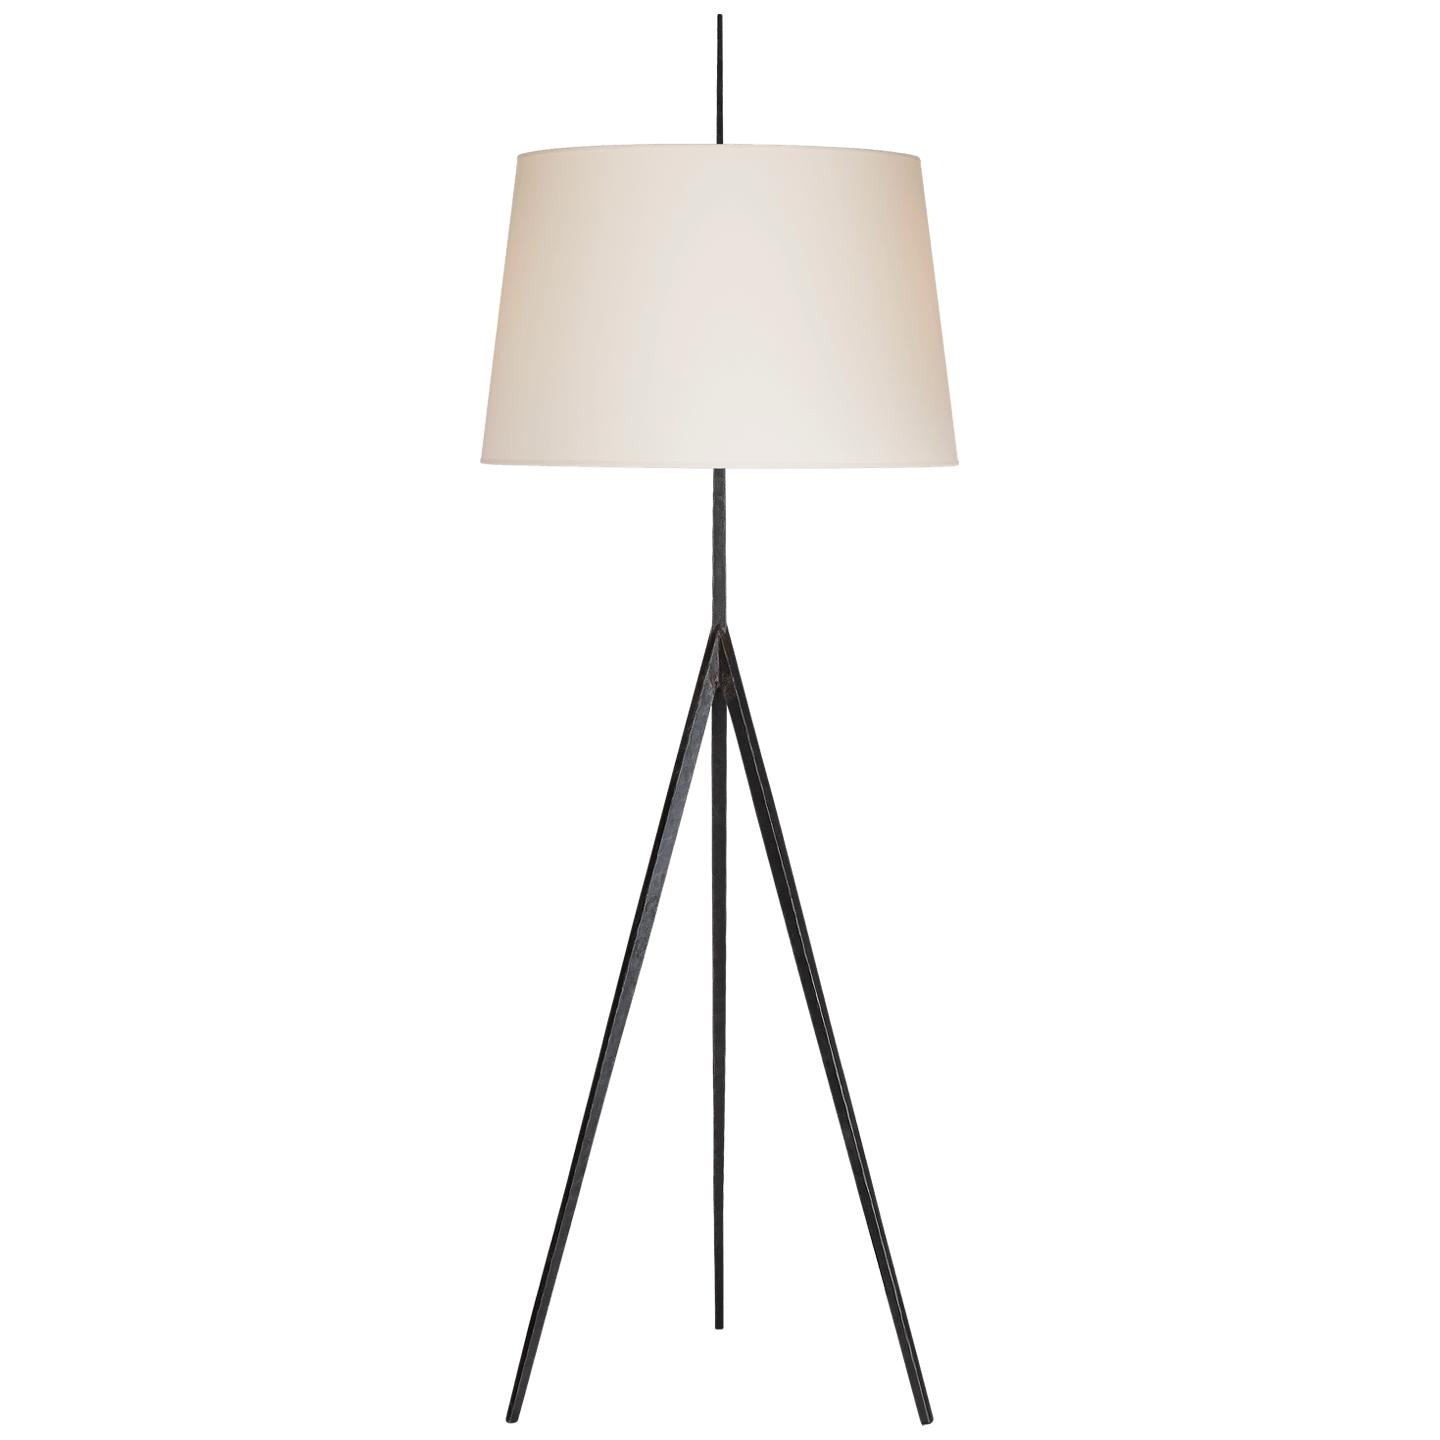 Купить Торшер Triad Hand-Forged Floor Lamp в интернет-магазине roooms.ru